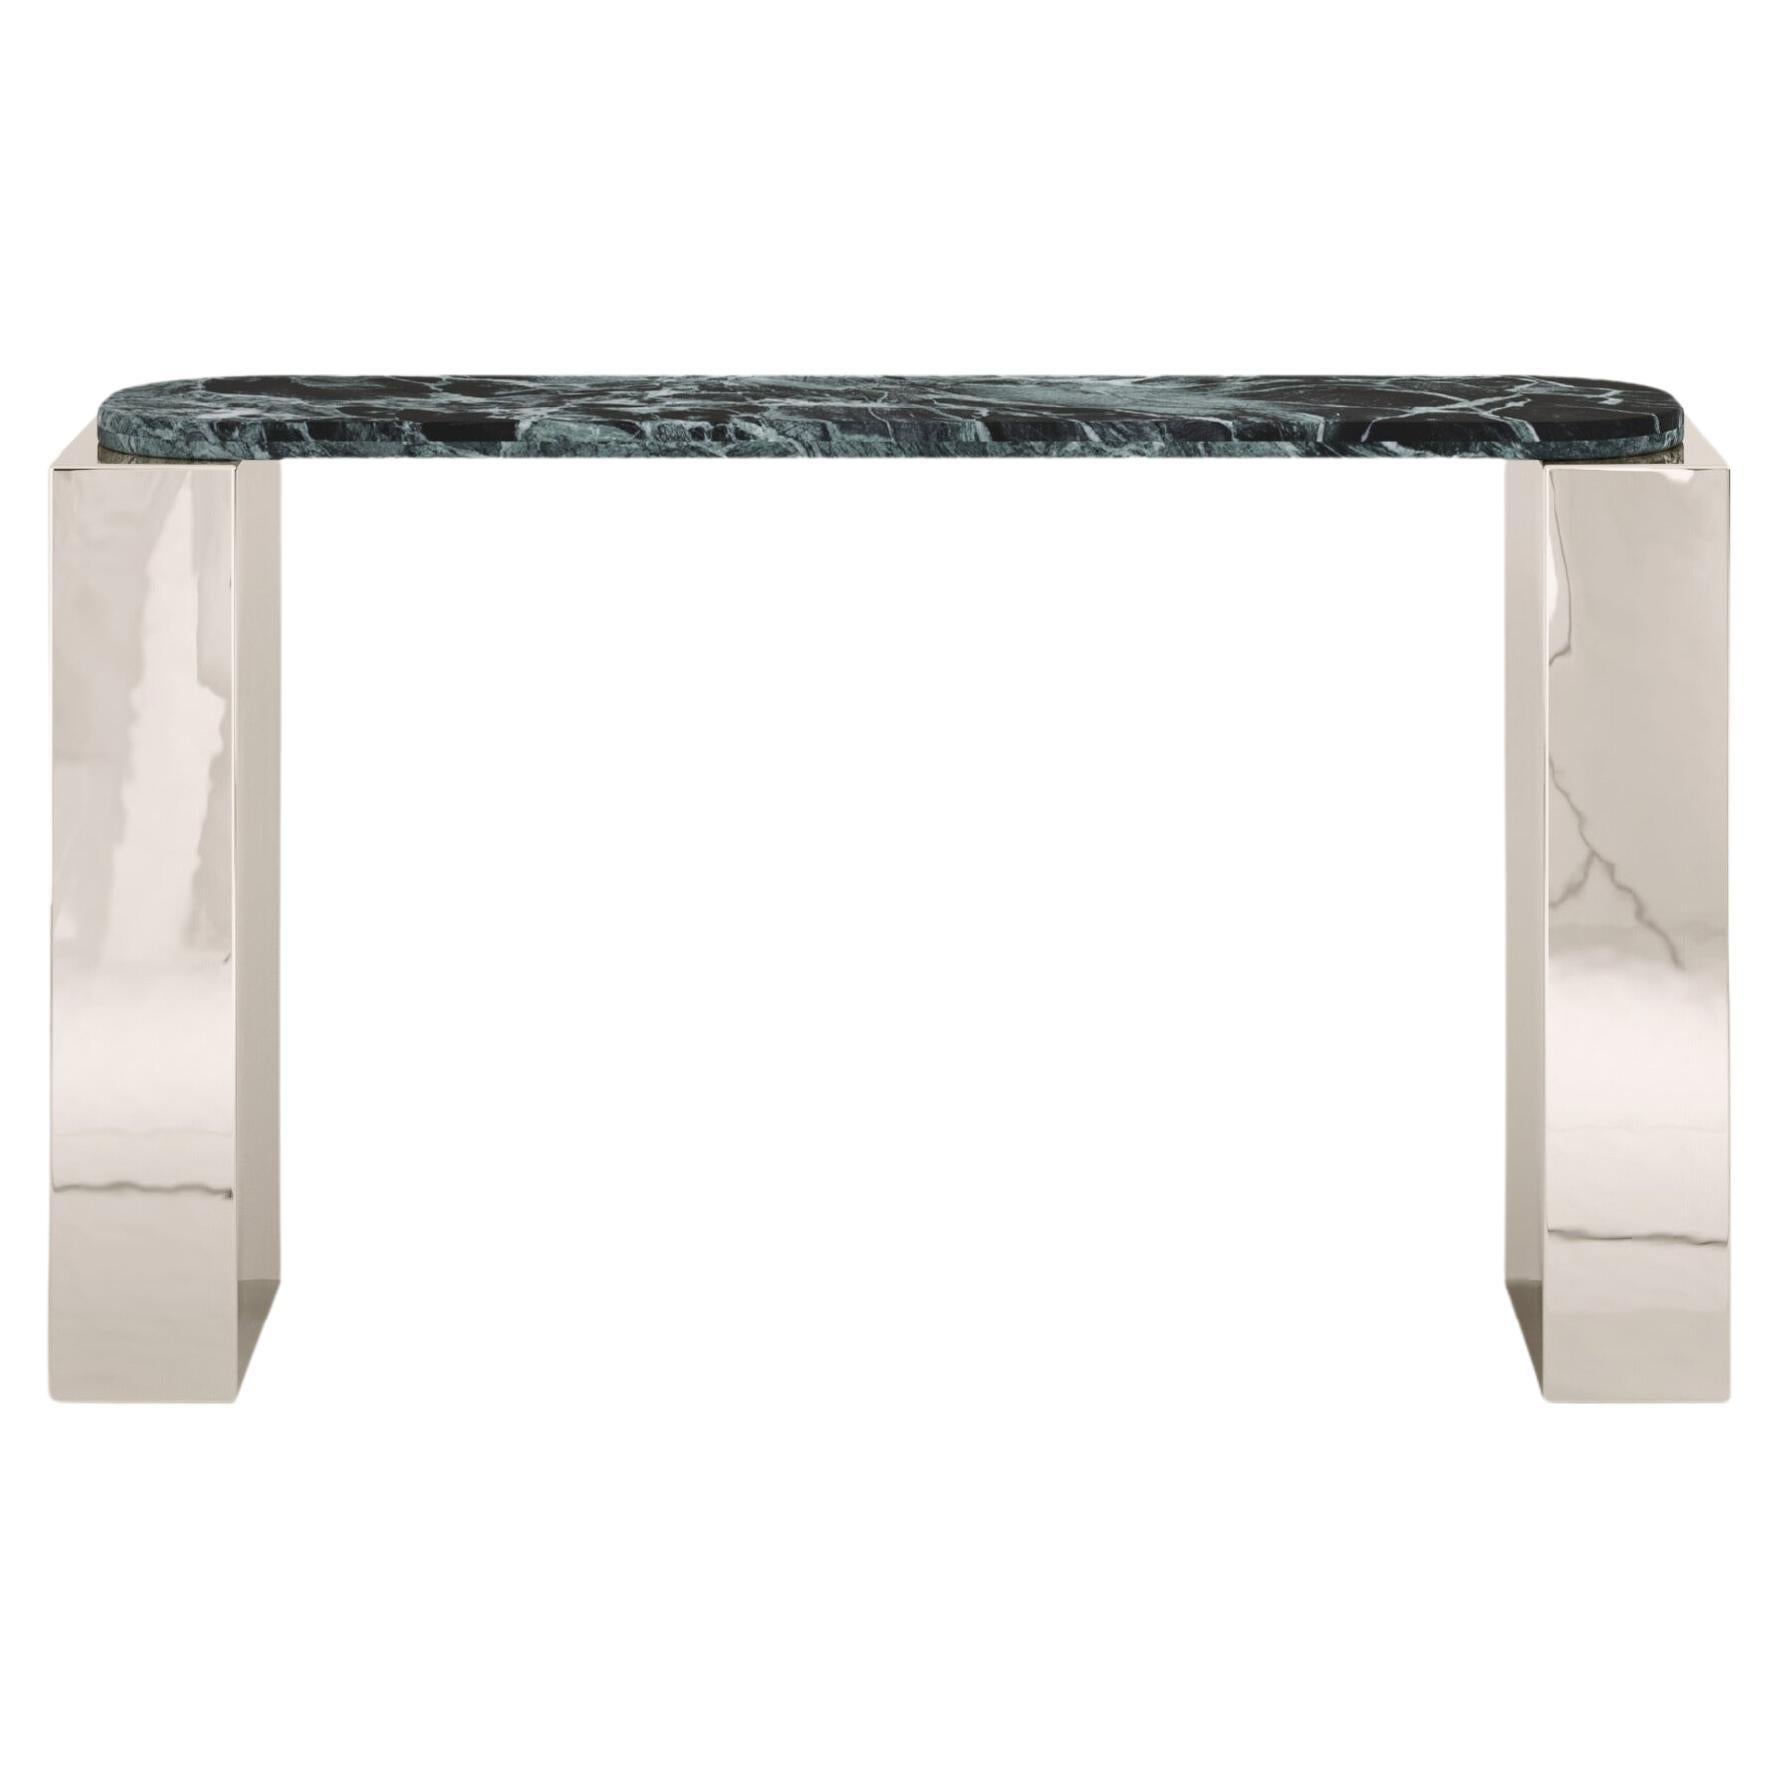 FORM(LA) Cubo Console Table 74”L x 17”W x 36”H Verde Alpi Marble & Chrome For Sale